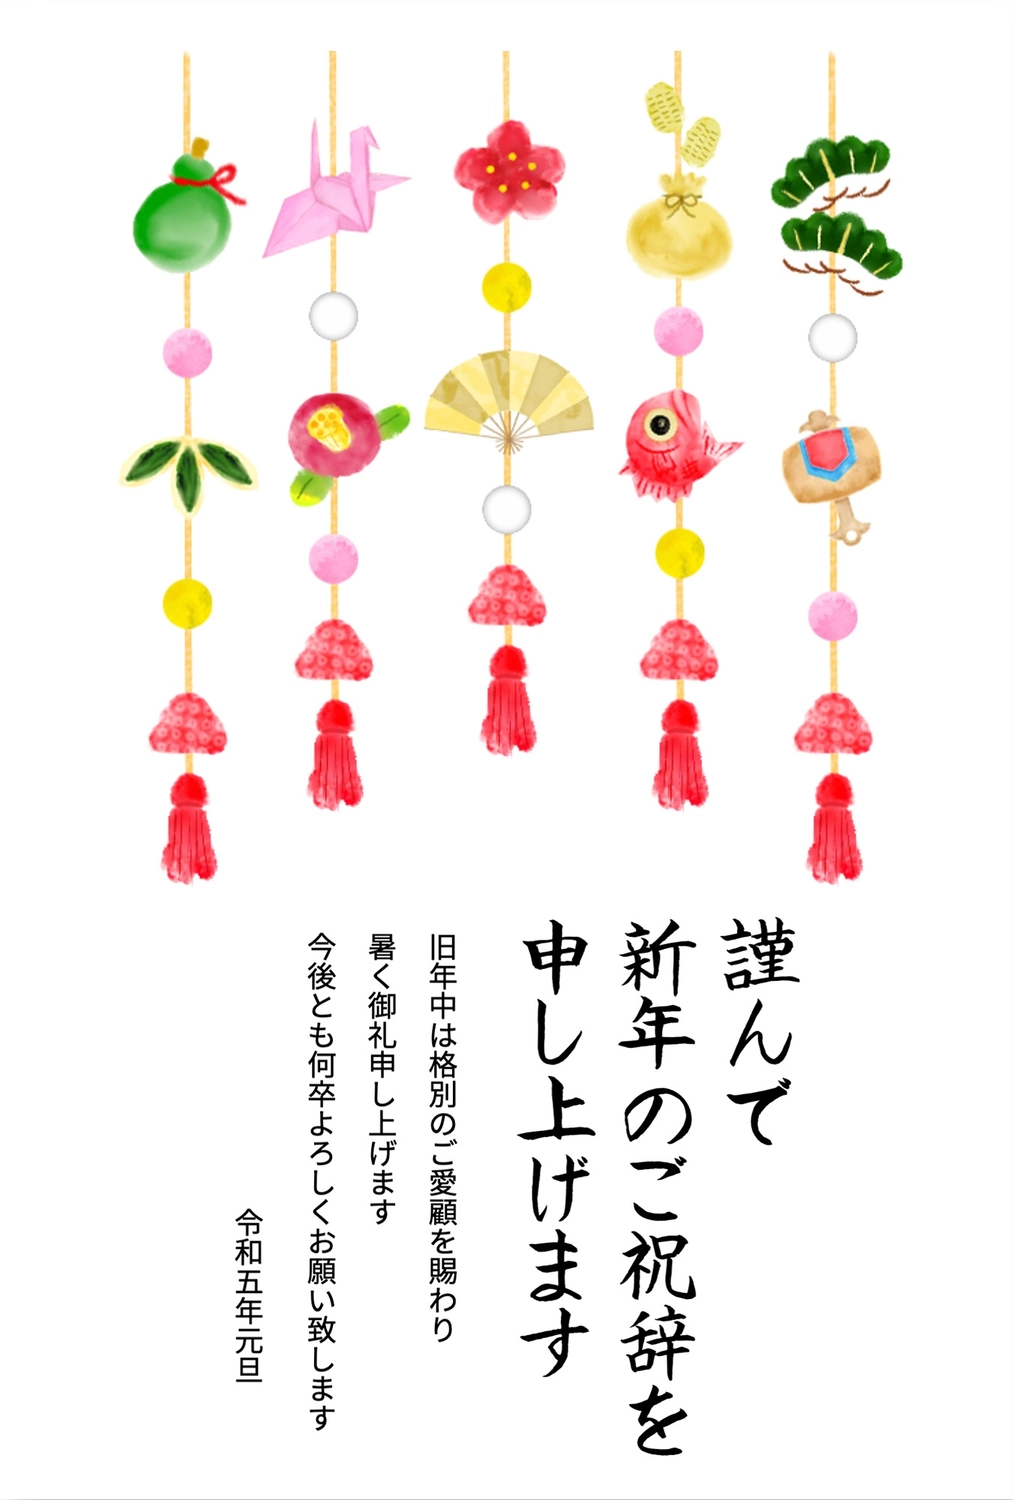 吊るし飾りの年賀状, business, hanging decoration, margin, New Year Card template